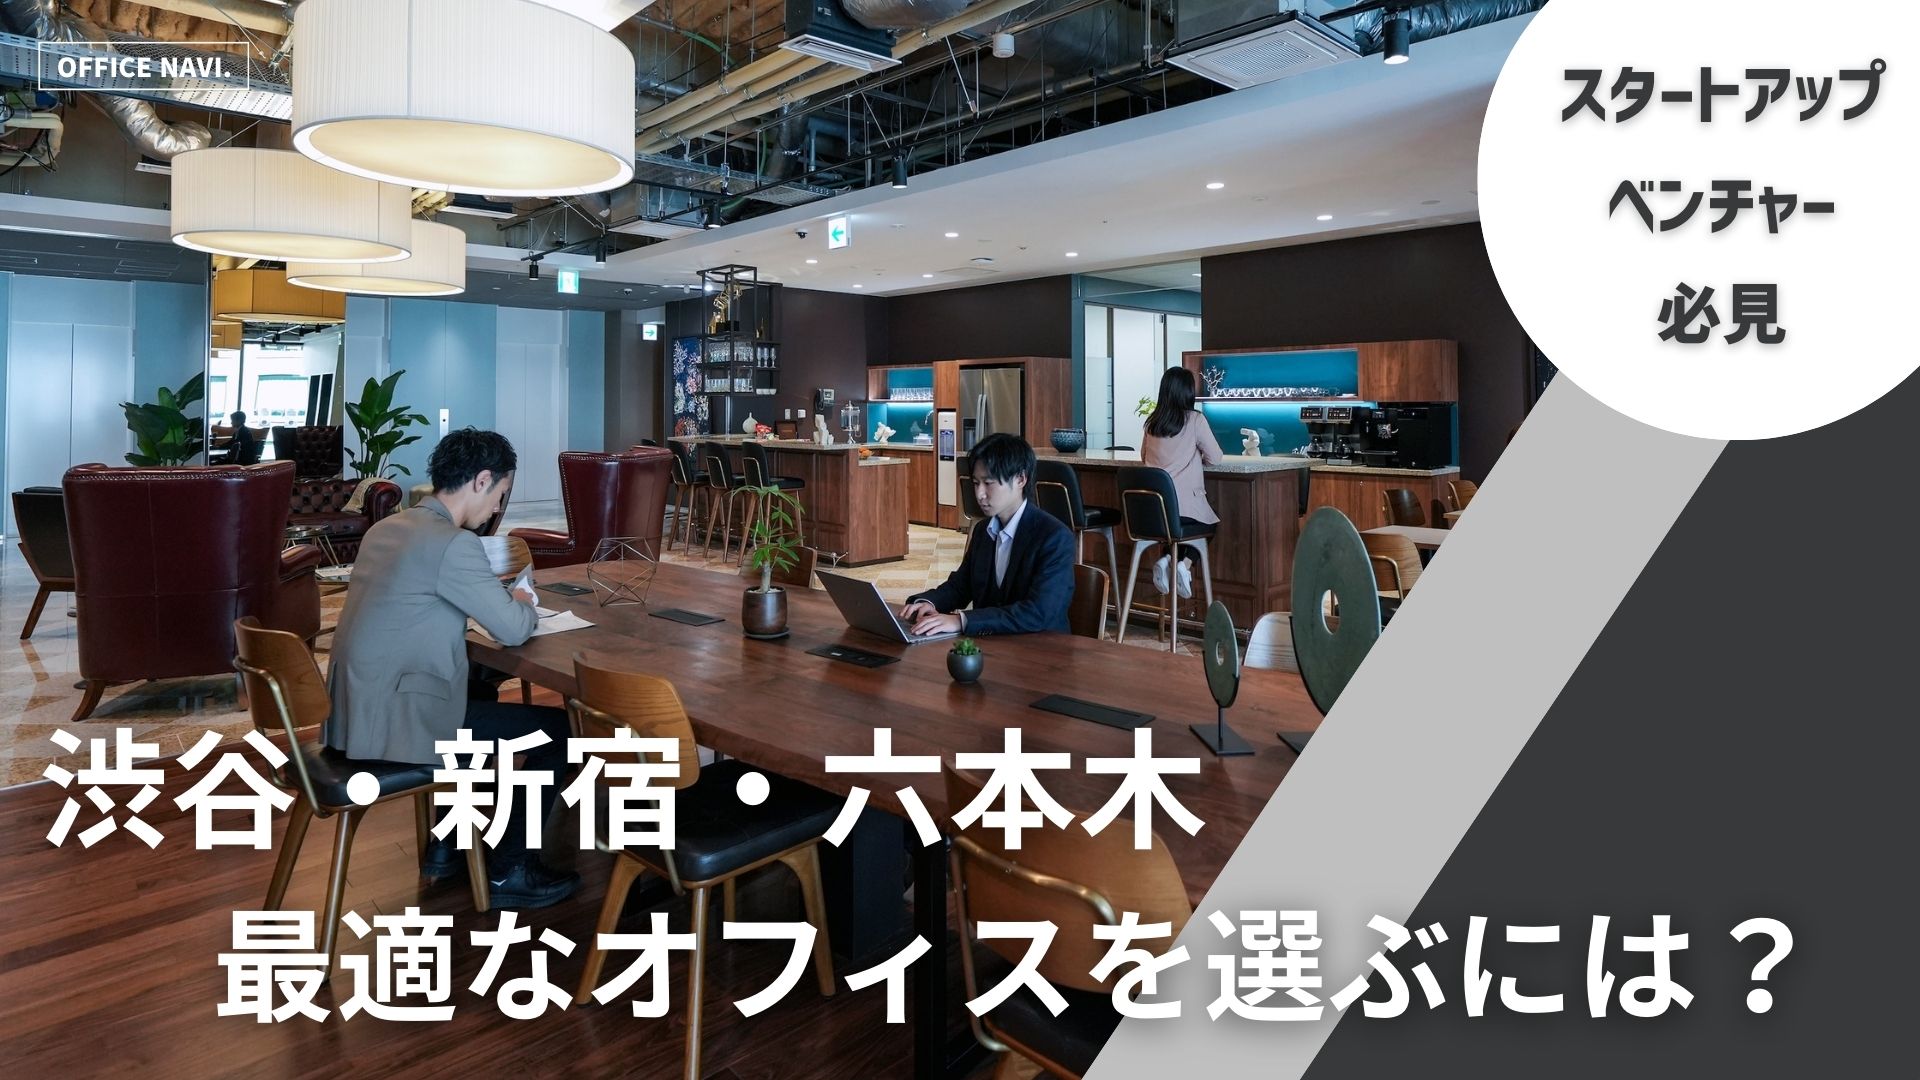 【東京都】渋谷・新宿・六本木で、最適なレンタルオフィスを選ぶには